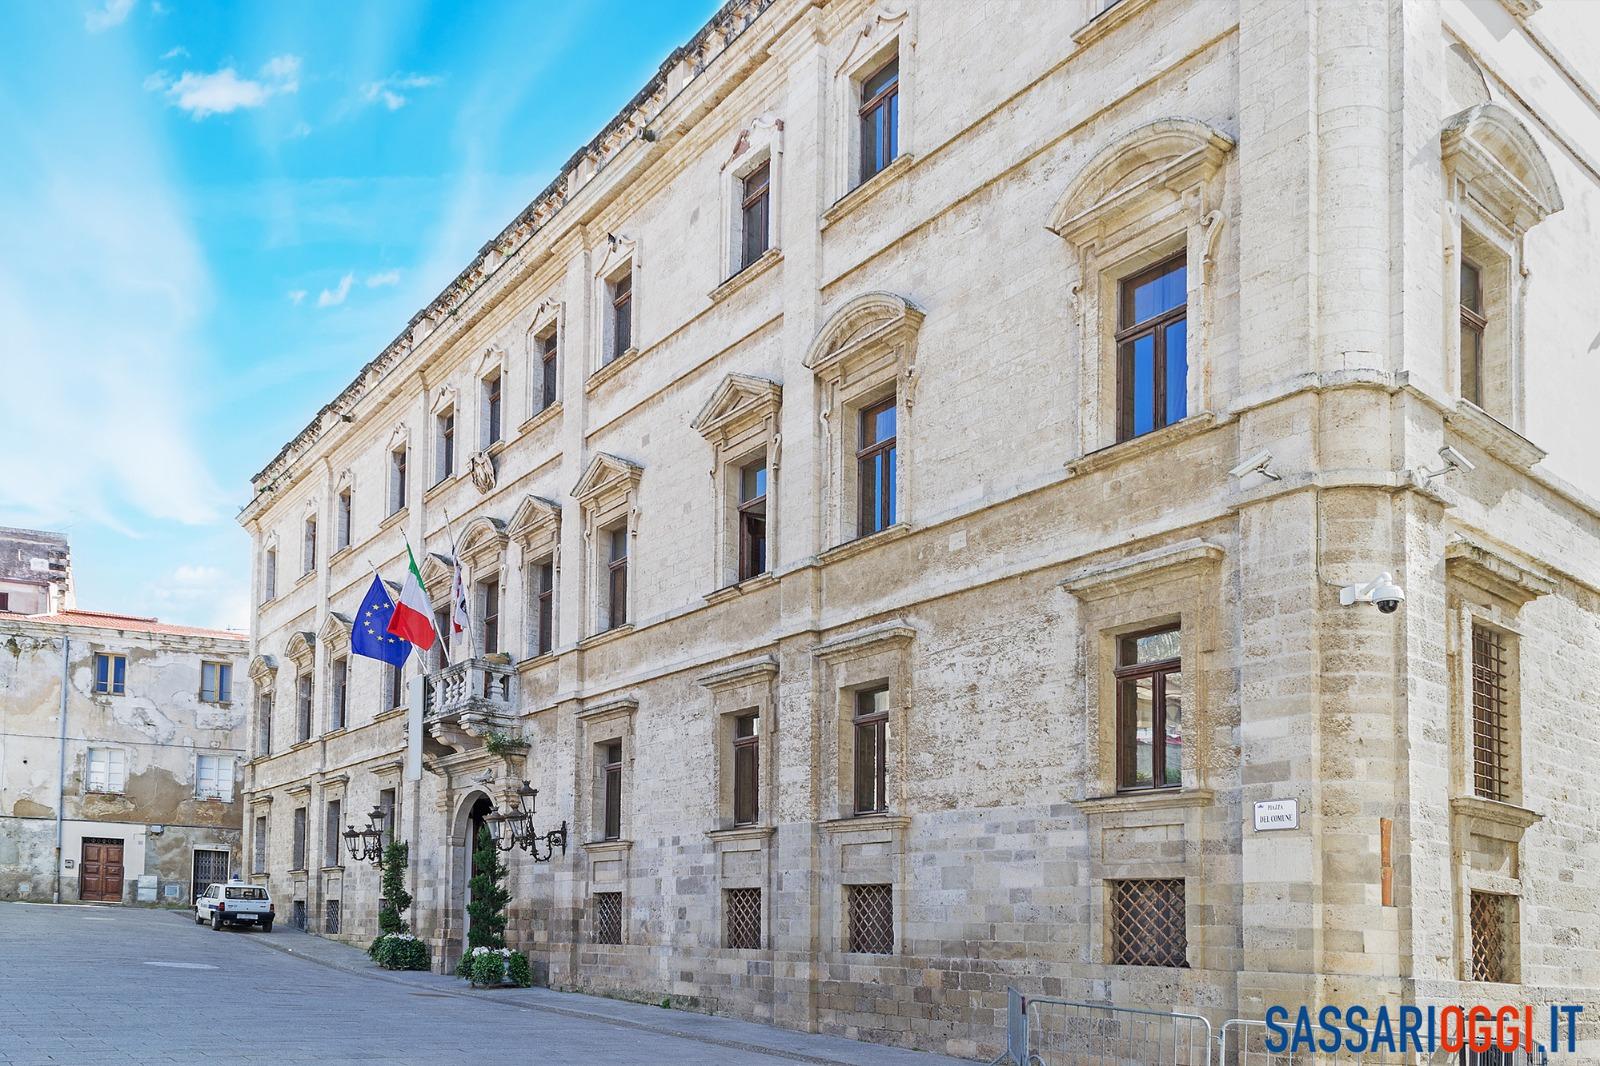 Palazzo Ducale, Comune di Sassari liste risarcimenti